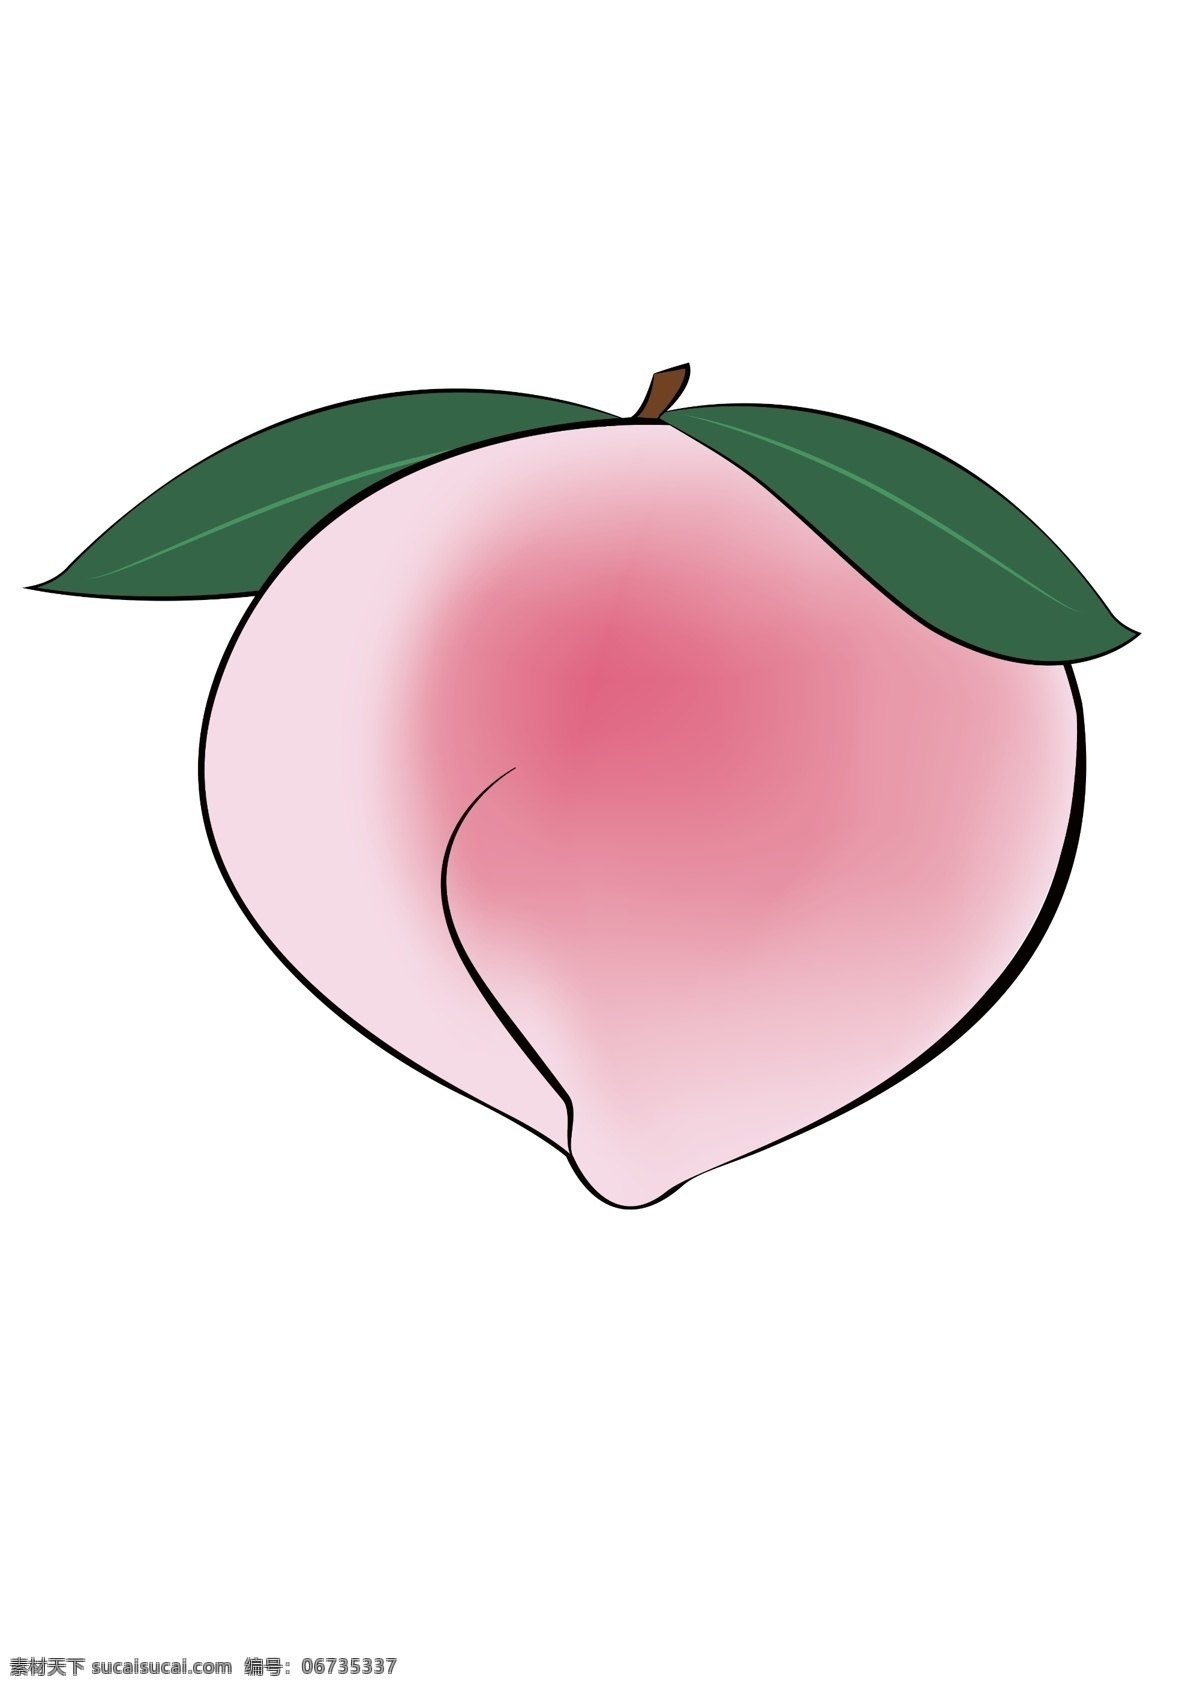 卡通手绘桃子 桃子素材 水蜜桃素材 粉色桃子 带叶桃子 手绘水蜜桃 分层